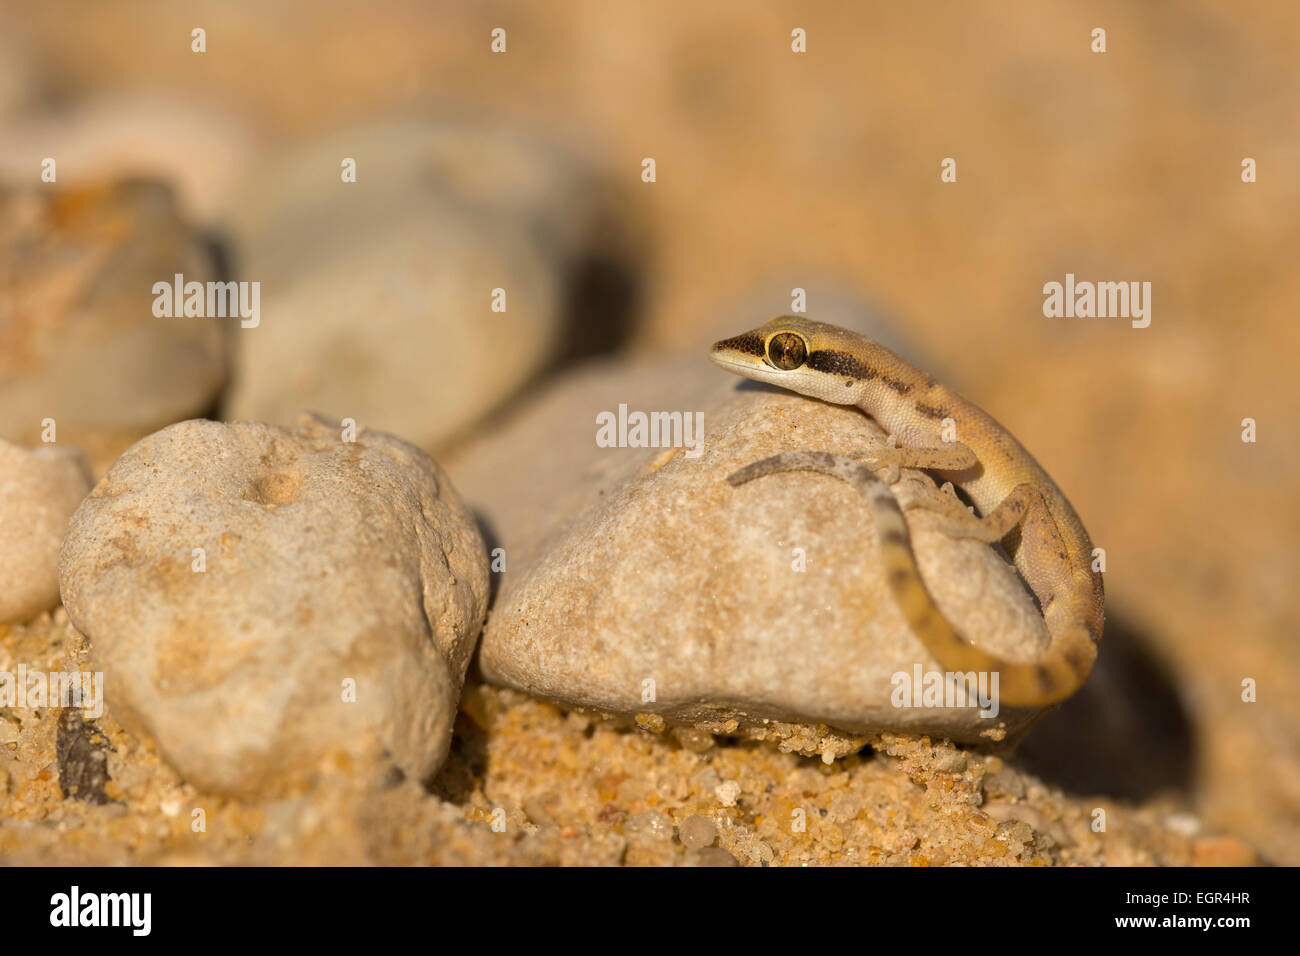 Arena argelino, Gecko (Tropiocolotes steudneri) AKA enano o pigmeo del Steudner gecos GECOS. Fotografiado en Israel en diciembre Foto de stock